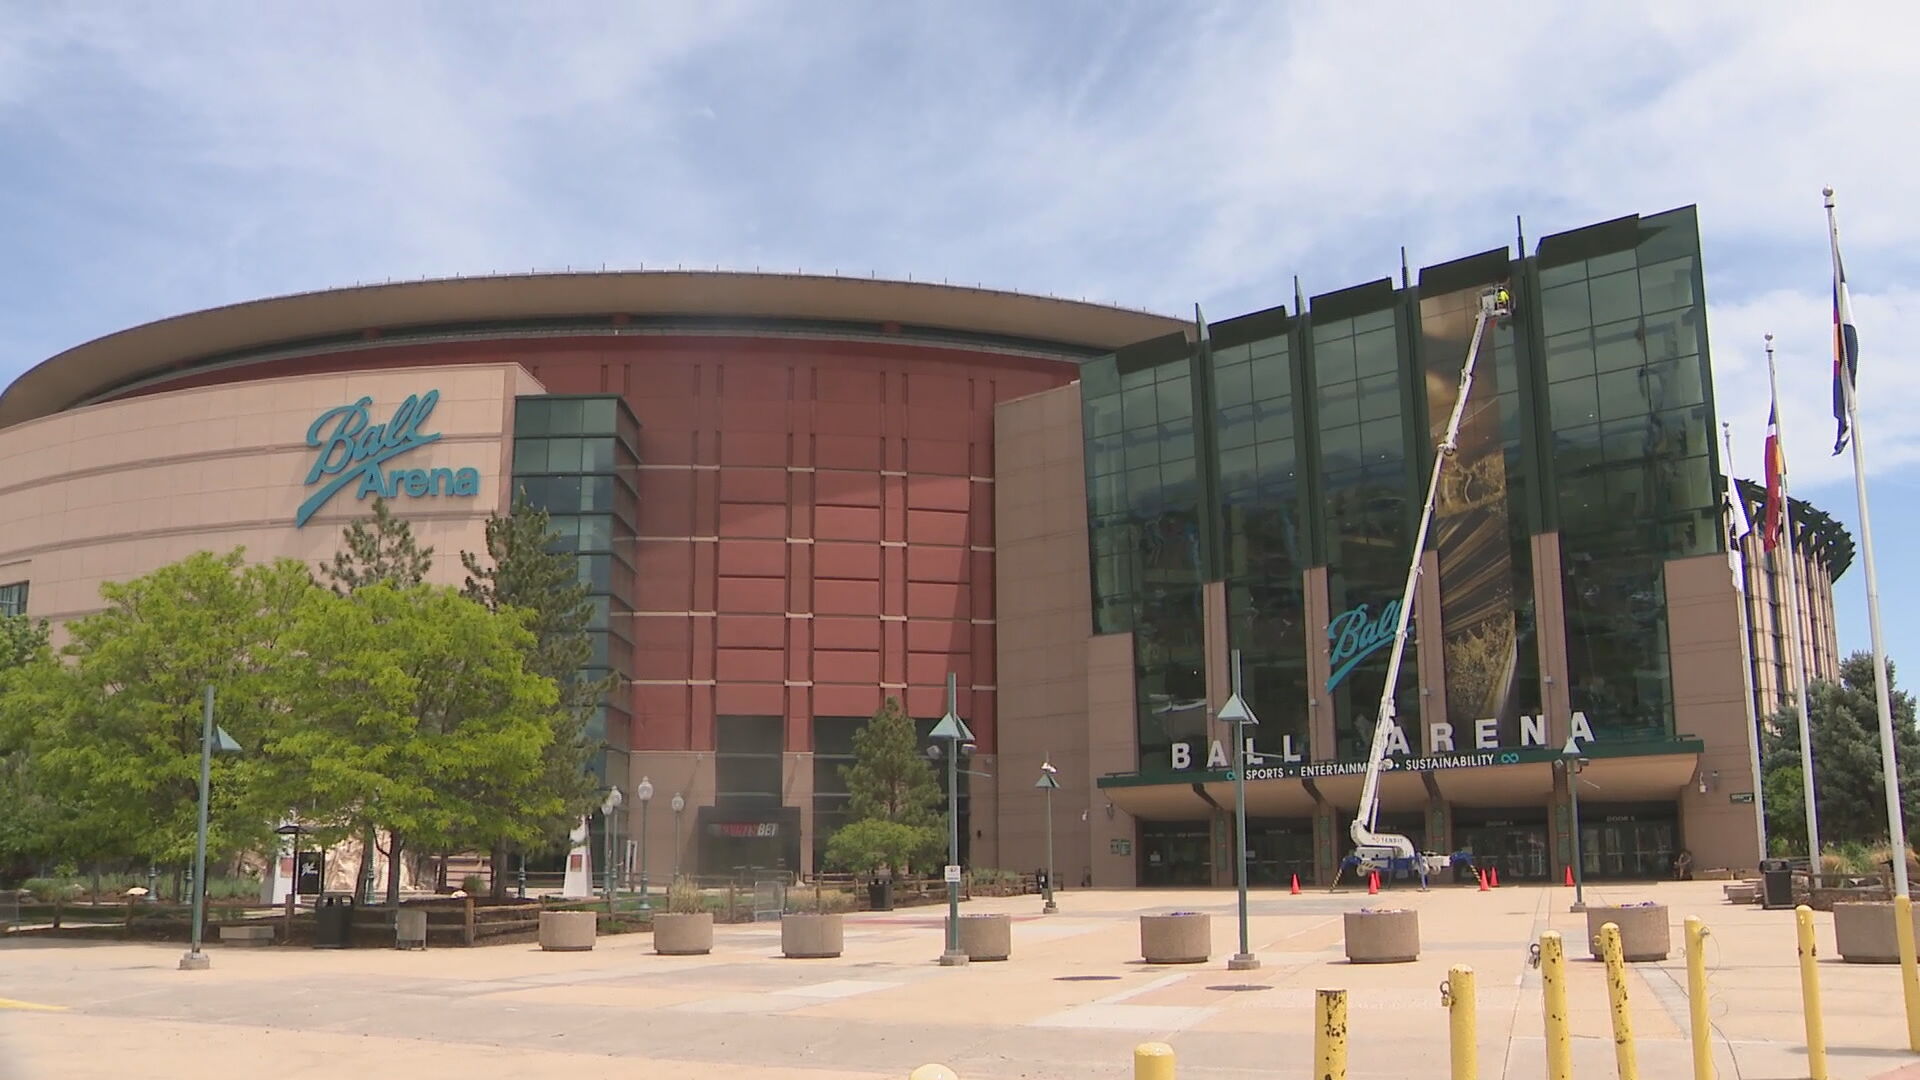 Ball Arena, Denver, Colorado